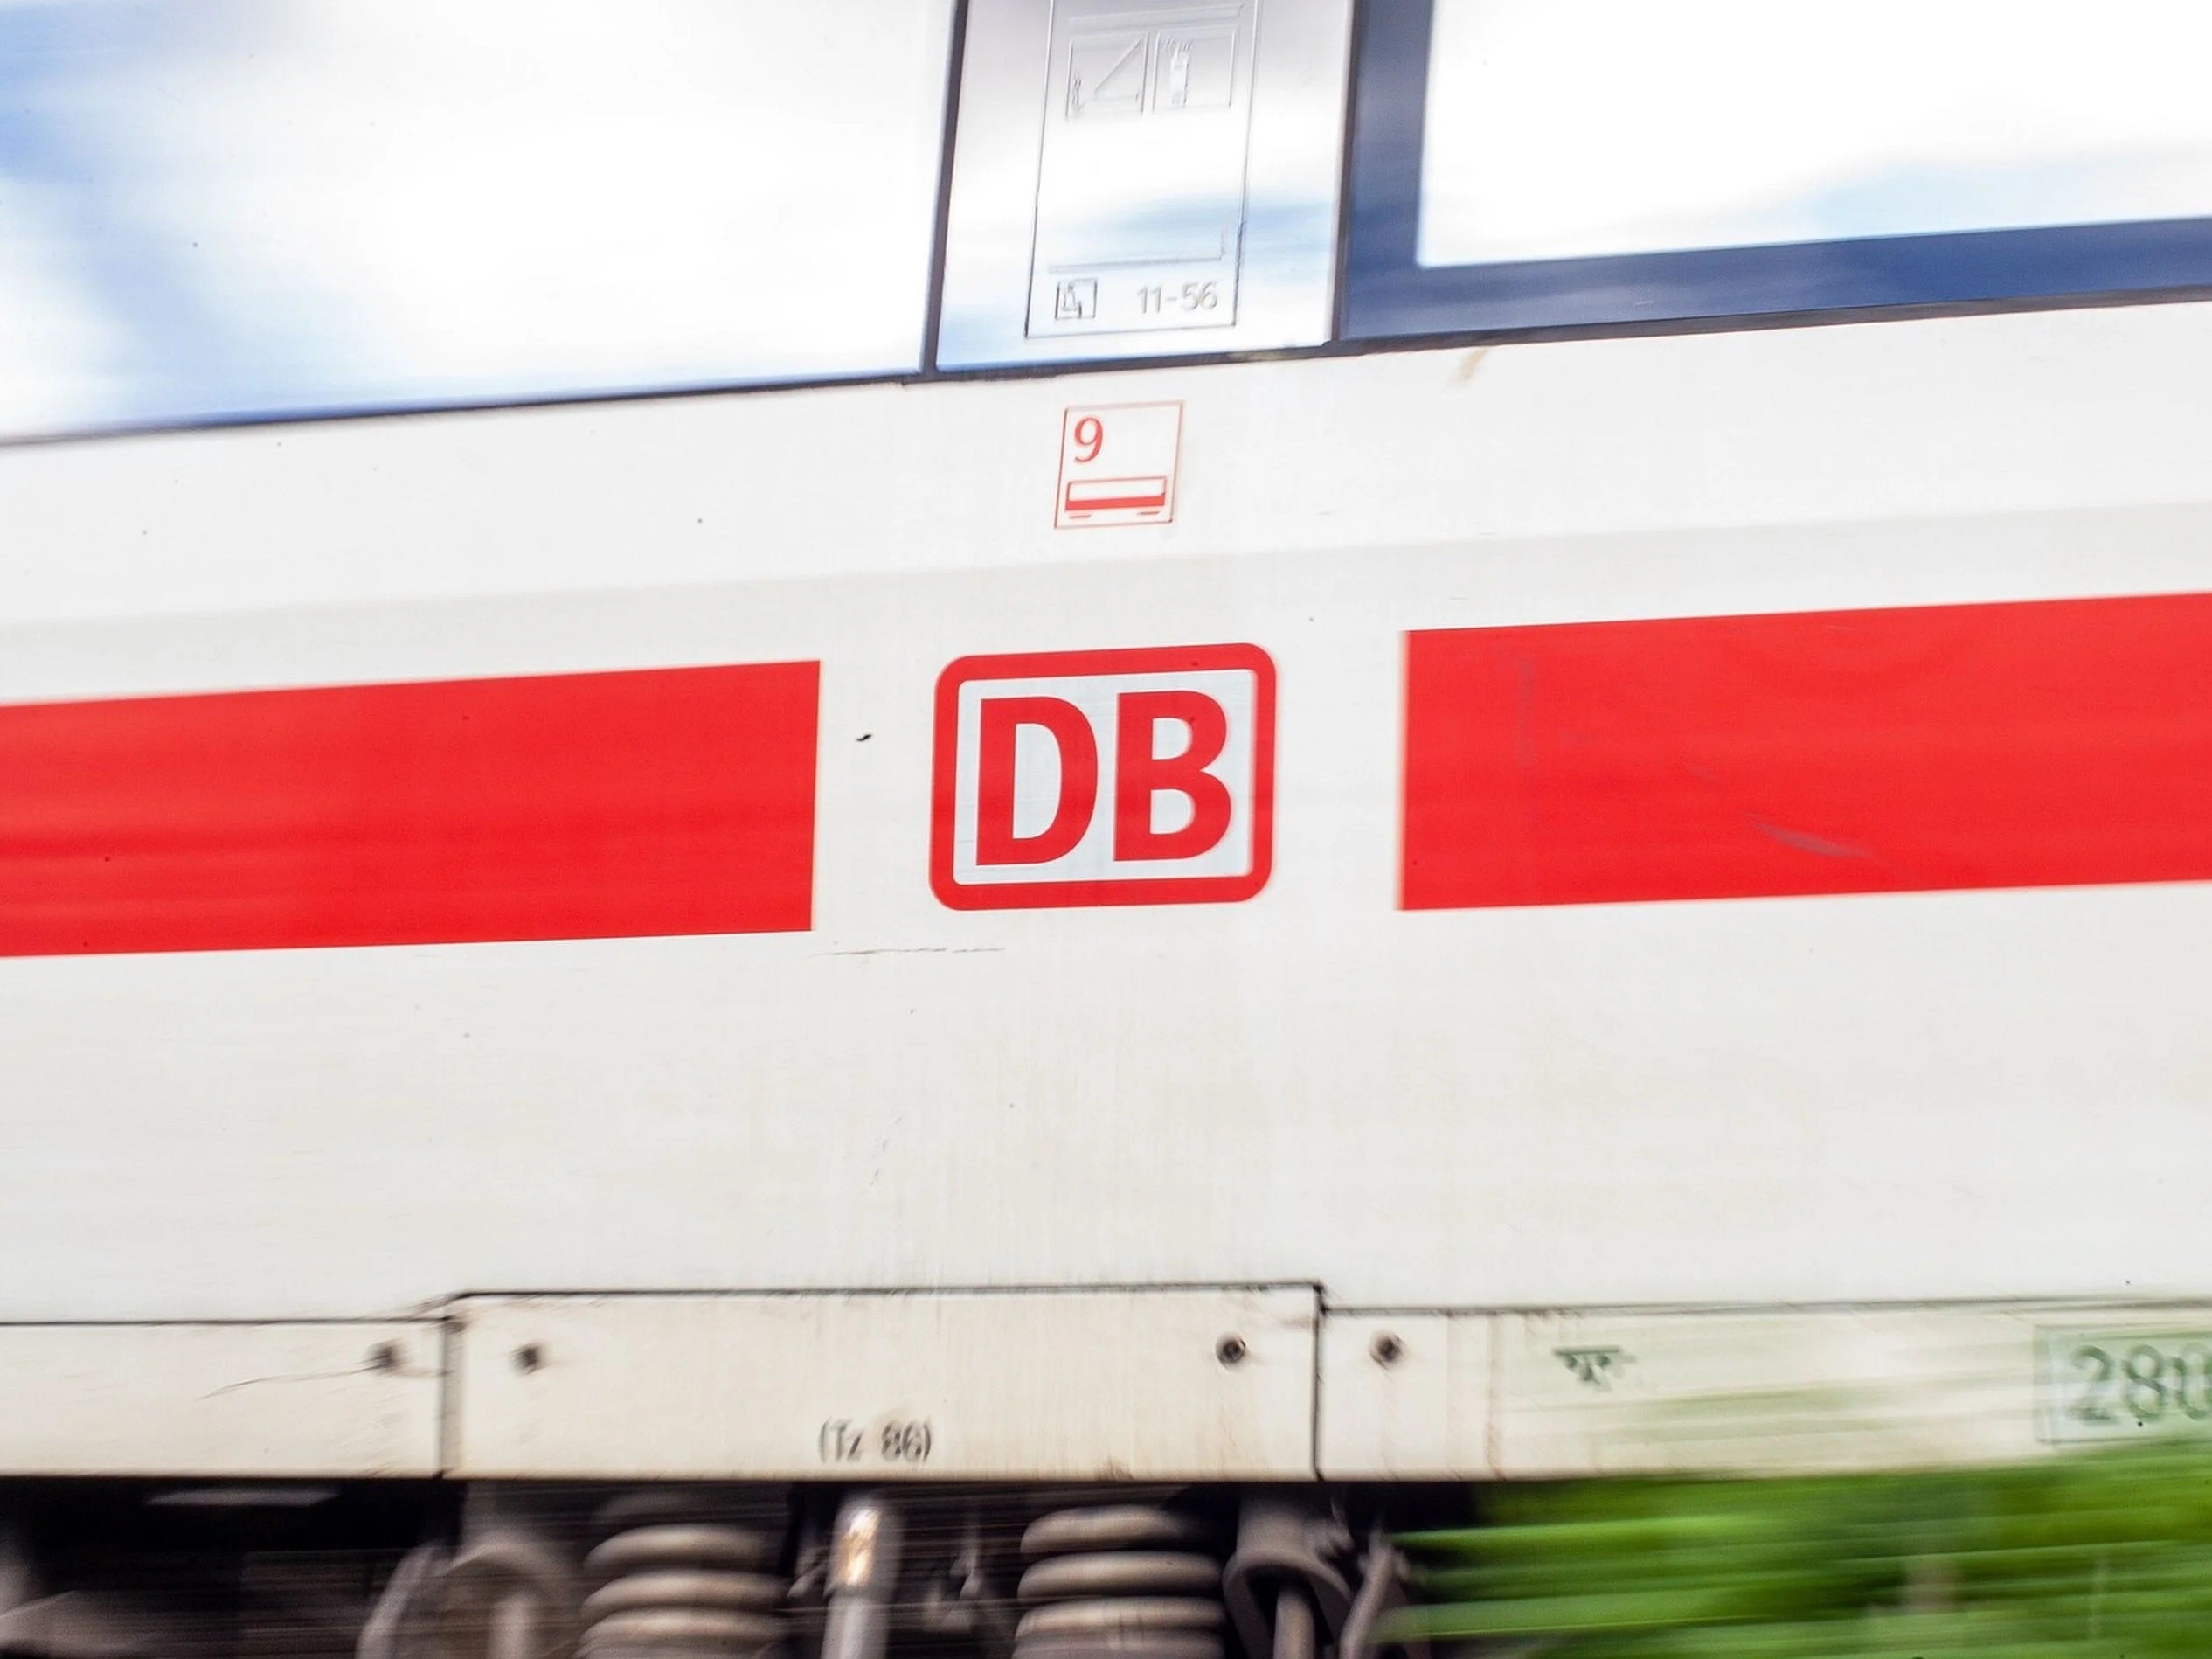 #Ab Oktober: DB schränkt günstige Tickets ein – Widerstand formiert sich